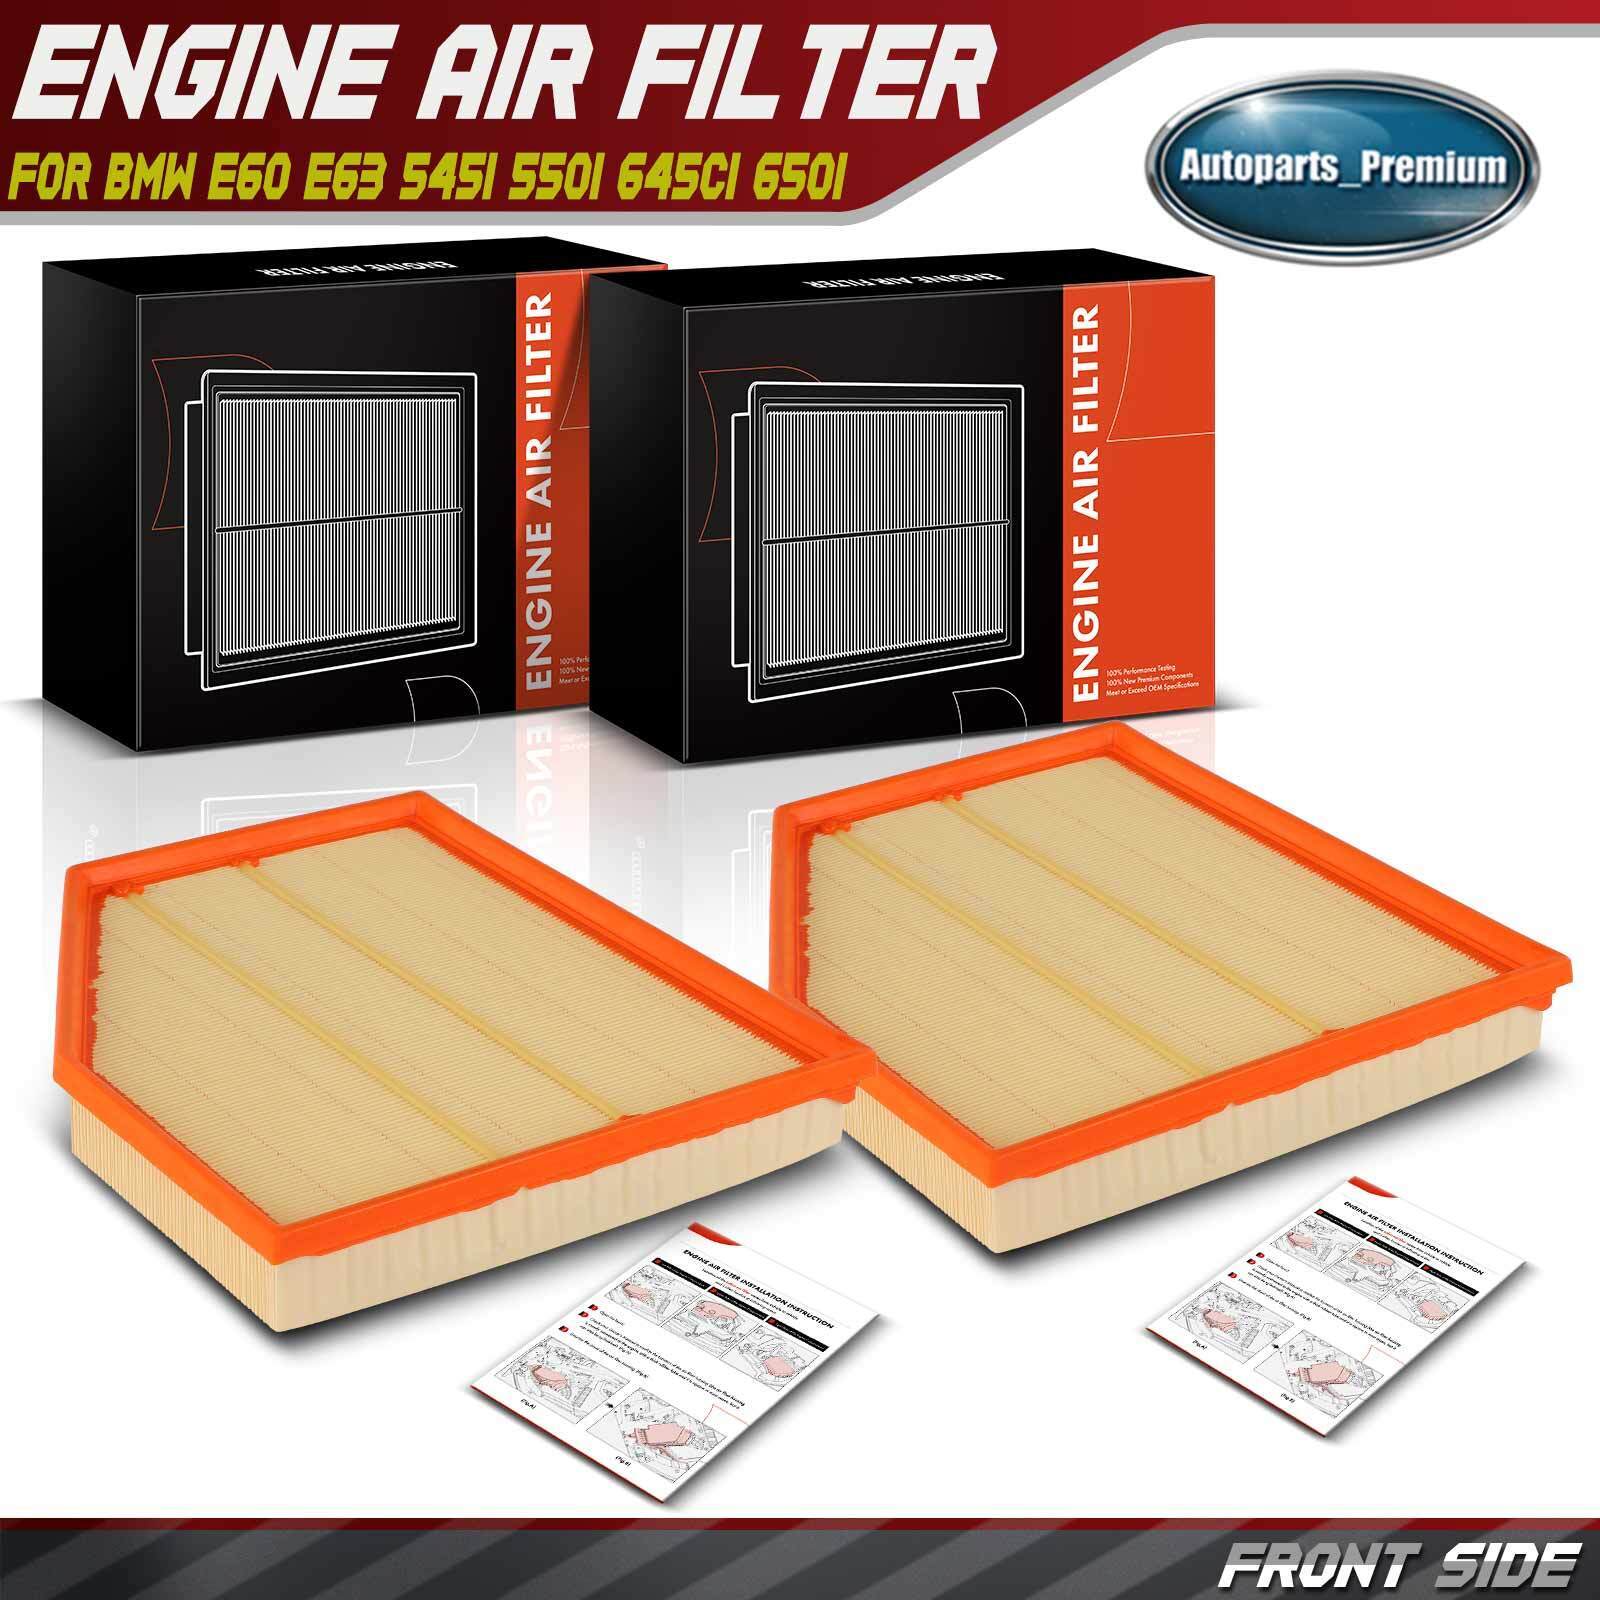 2x Engine Air Filter for BMW E60 E63 545i 550i 645Ci 650i 4.4L 4.8L 13717521023